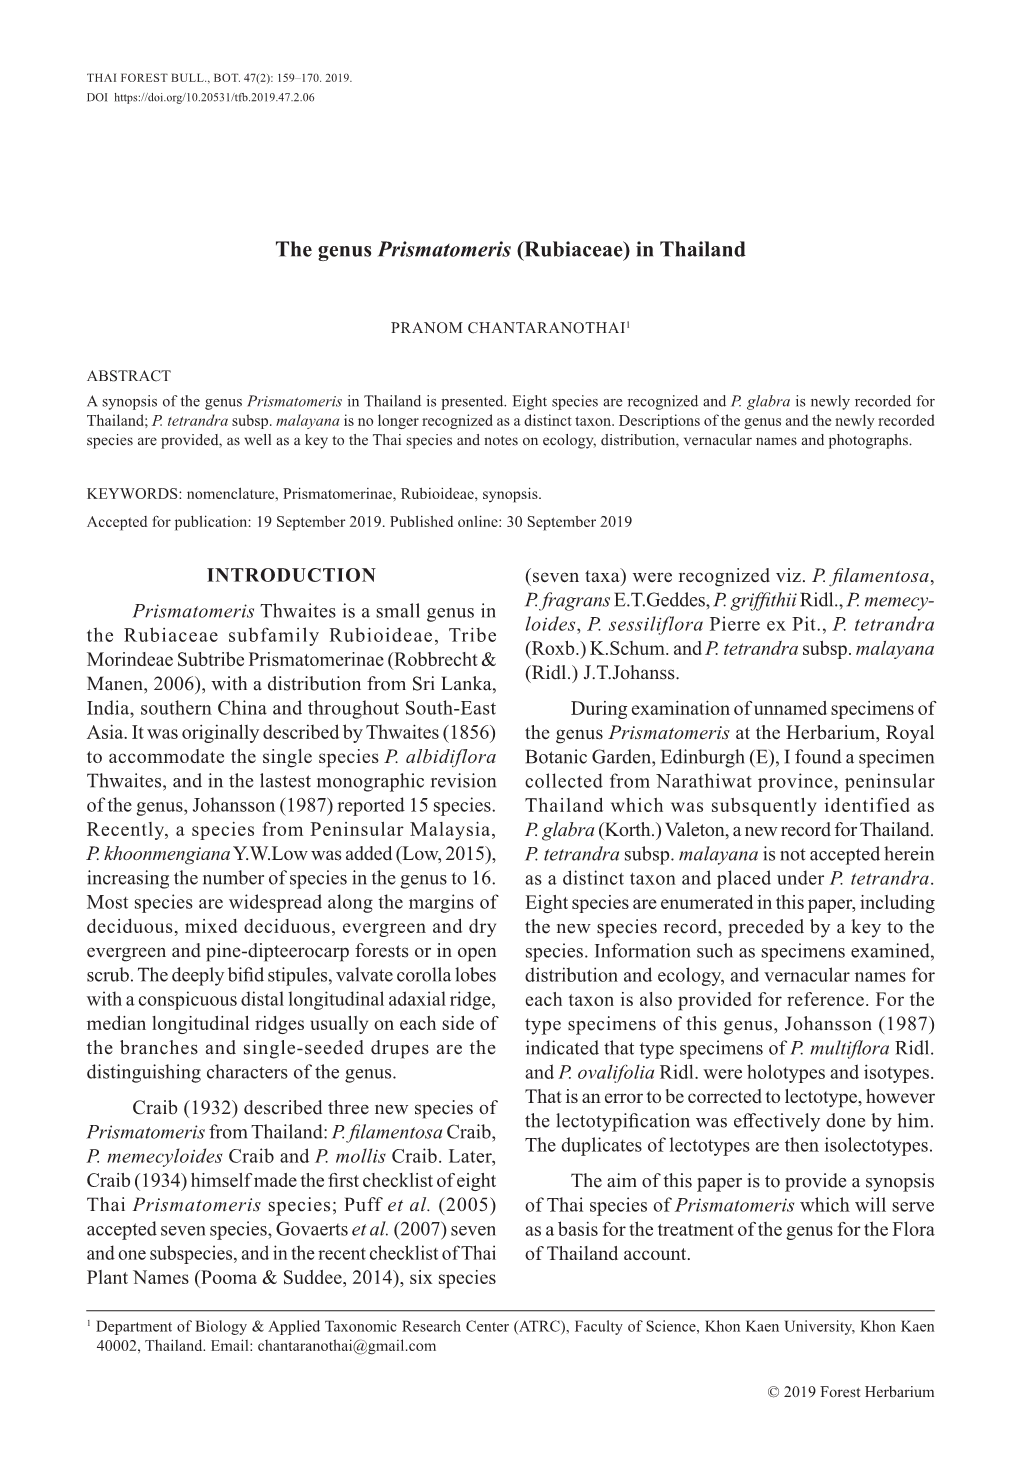 The Genus Prismatomeris (Rubiaceae) in Thailand